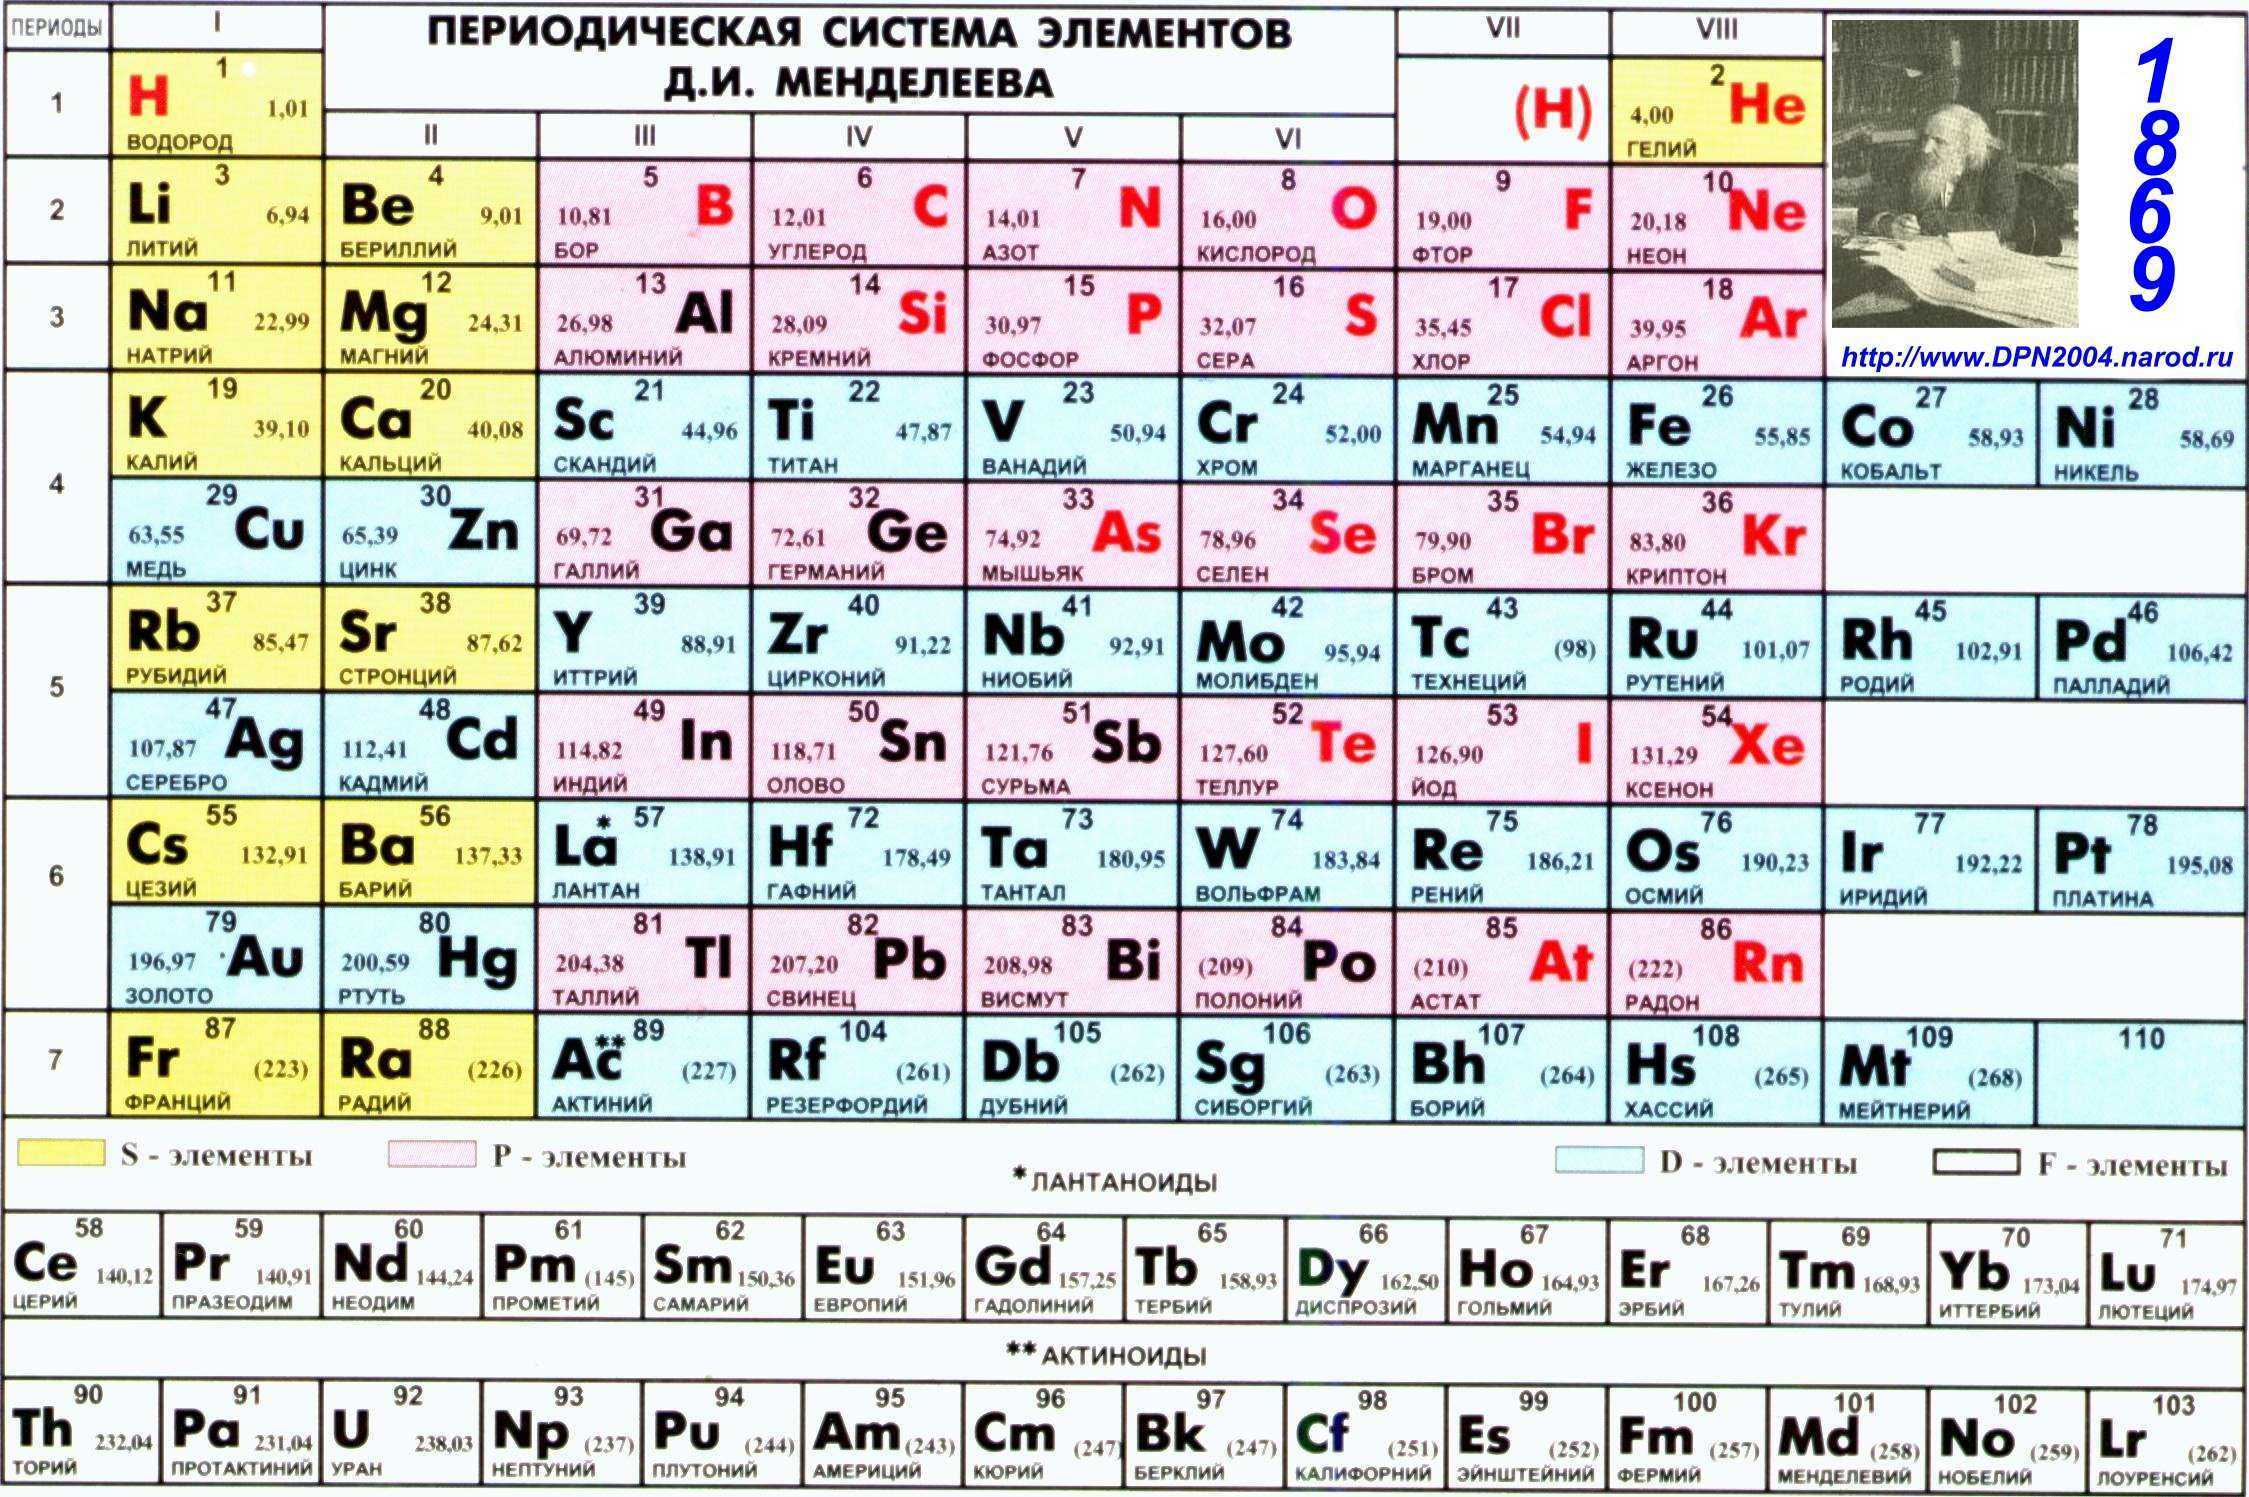 Химические элементы города. Периодическая таблица Менделеева. Показать периодическую таблицу Менделеева. Первые 20 элементов таблицы Менделеева.